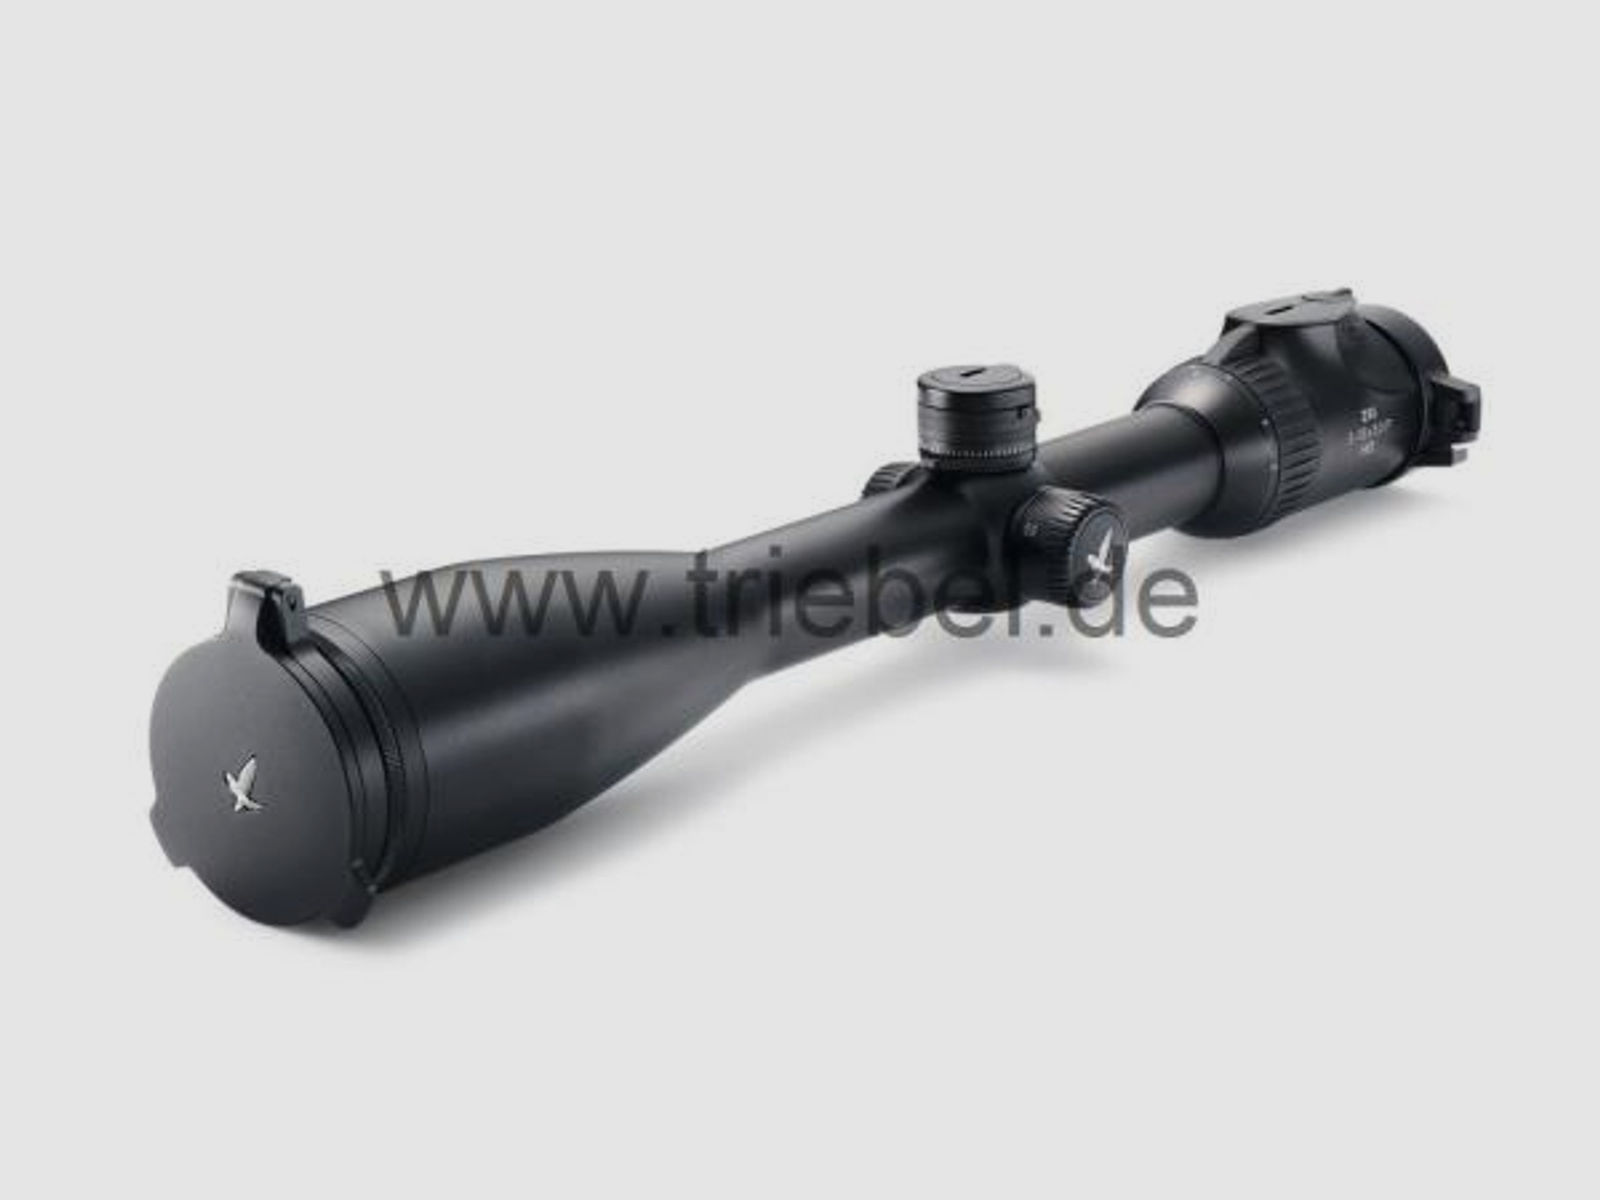 SWAROVSKI Zubehör für Zielfernrohre Objektivdeckel 63 mm SLP-O-63 f. dS 5-25x52